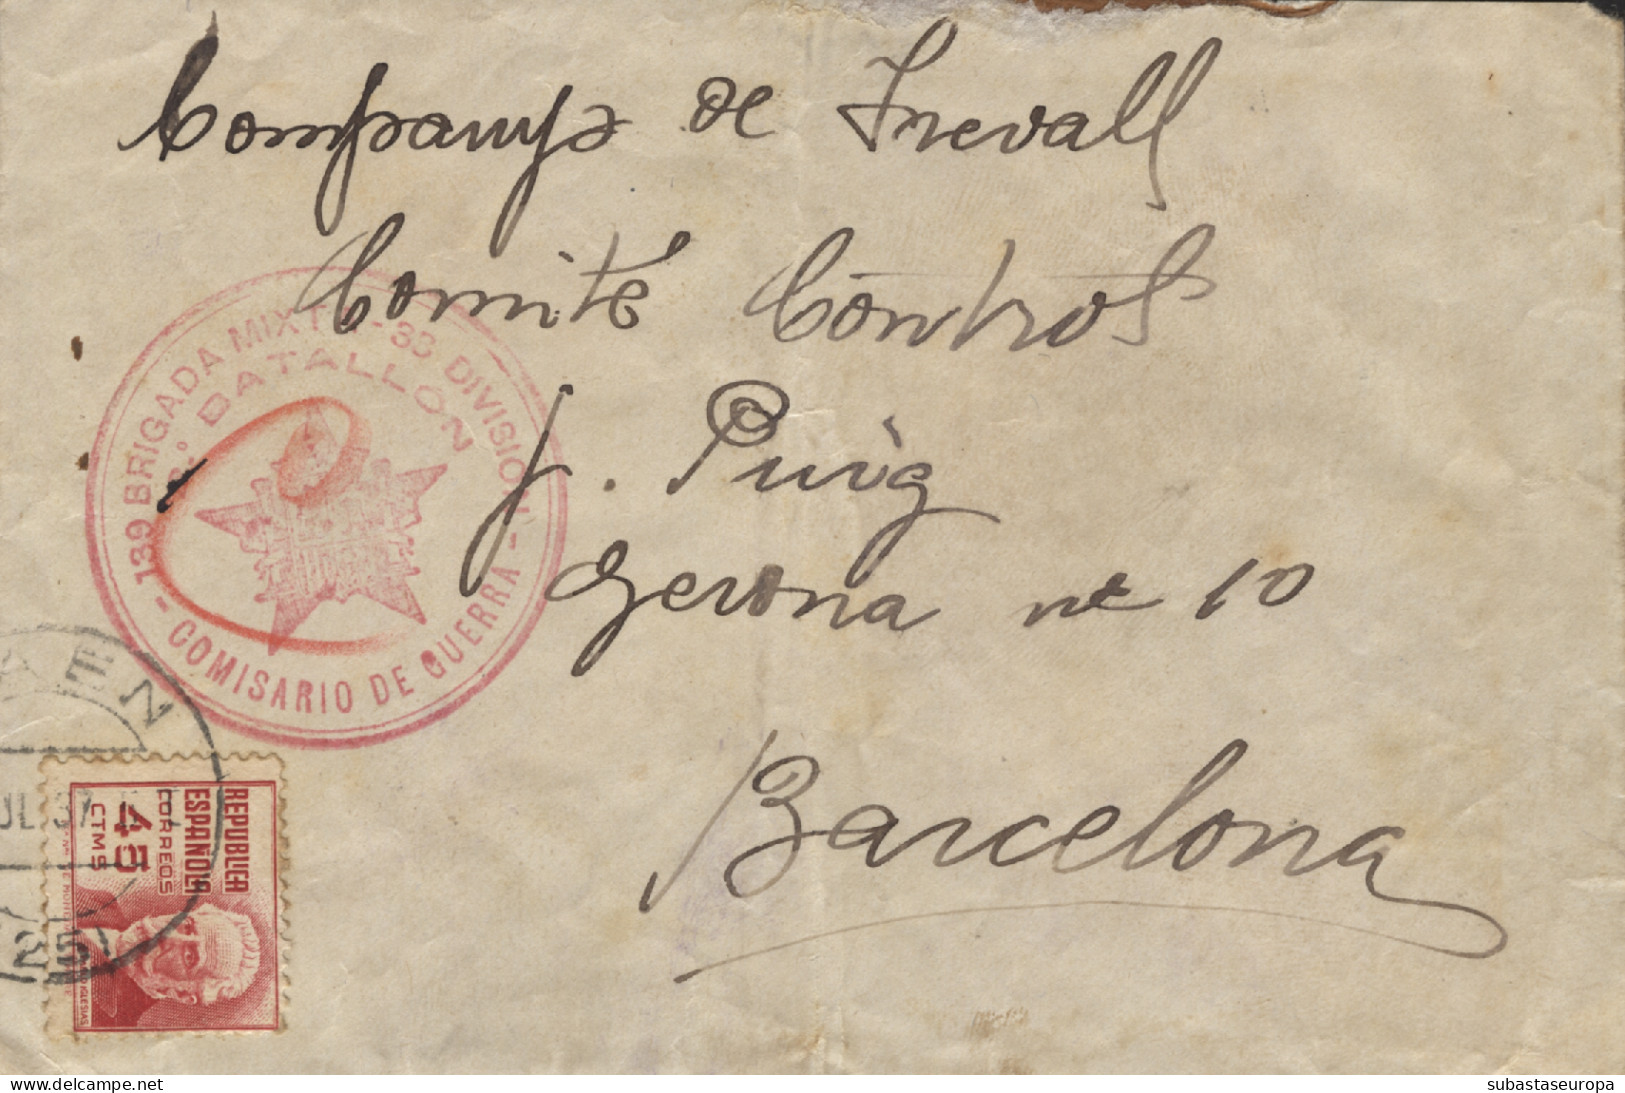 Carta Circulada Desde Frailes (Jaén) A Barcelona, El Año 1937. Marca "139 Brigada Mixta - 33 División - 2 Bon"  - Marques De Censures Républicaines